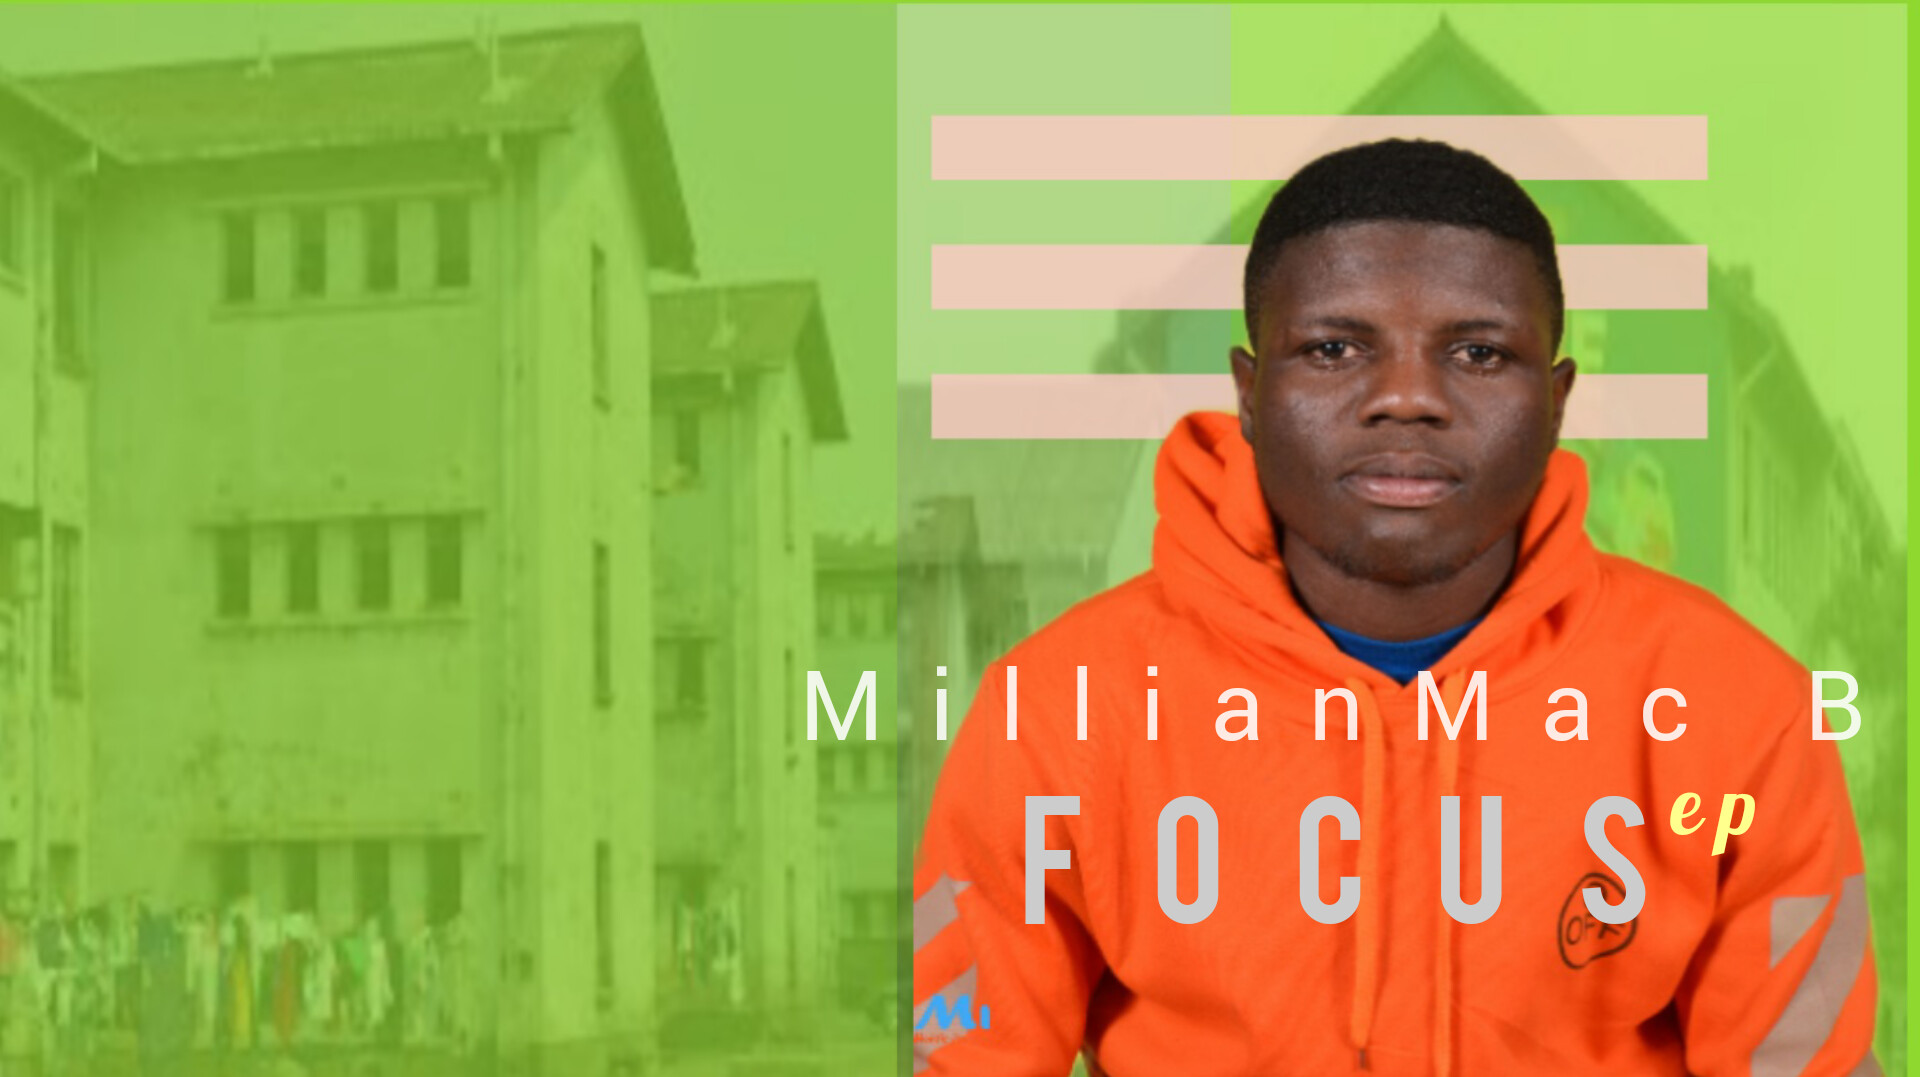 FOCUS by MillianMac B | Album